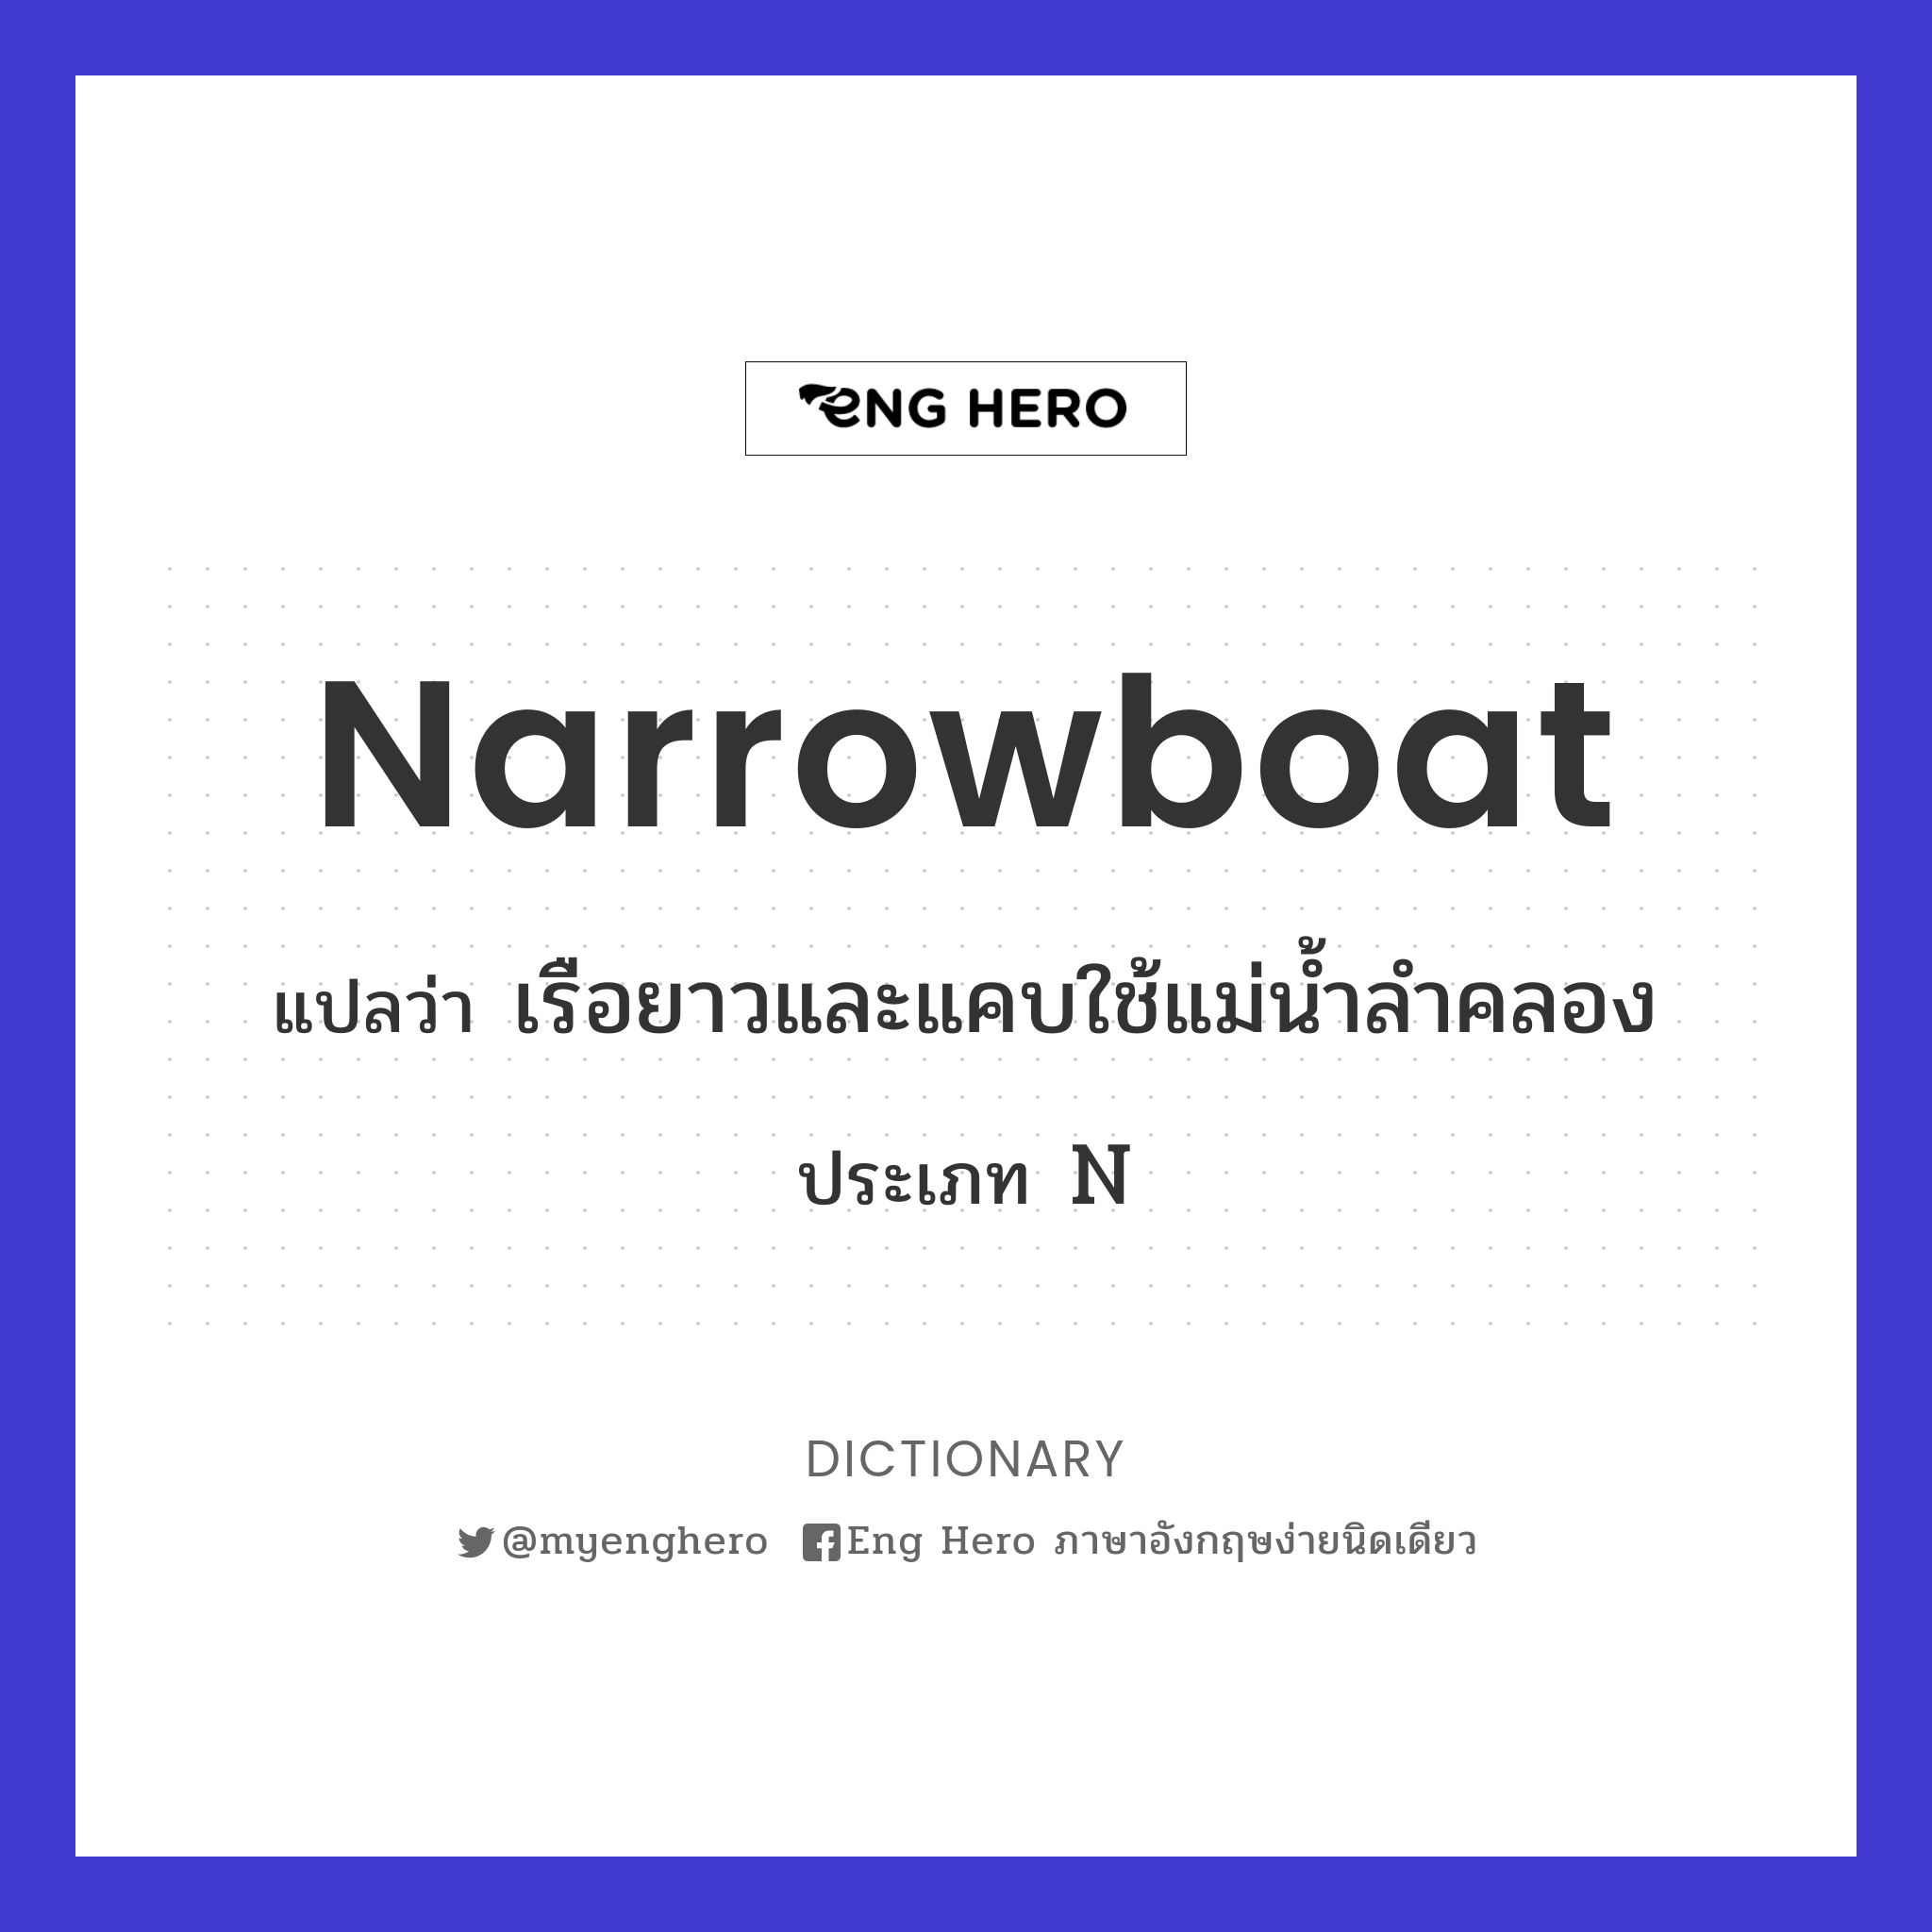 narrowboat